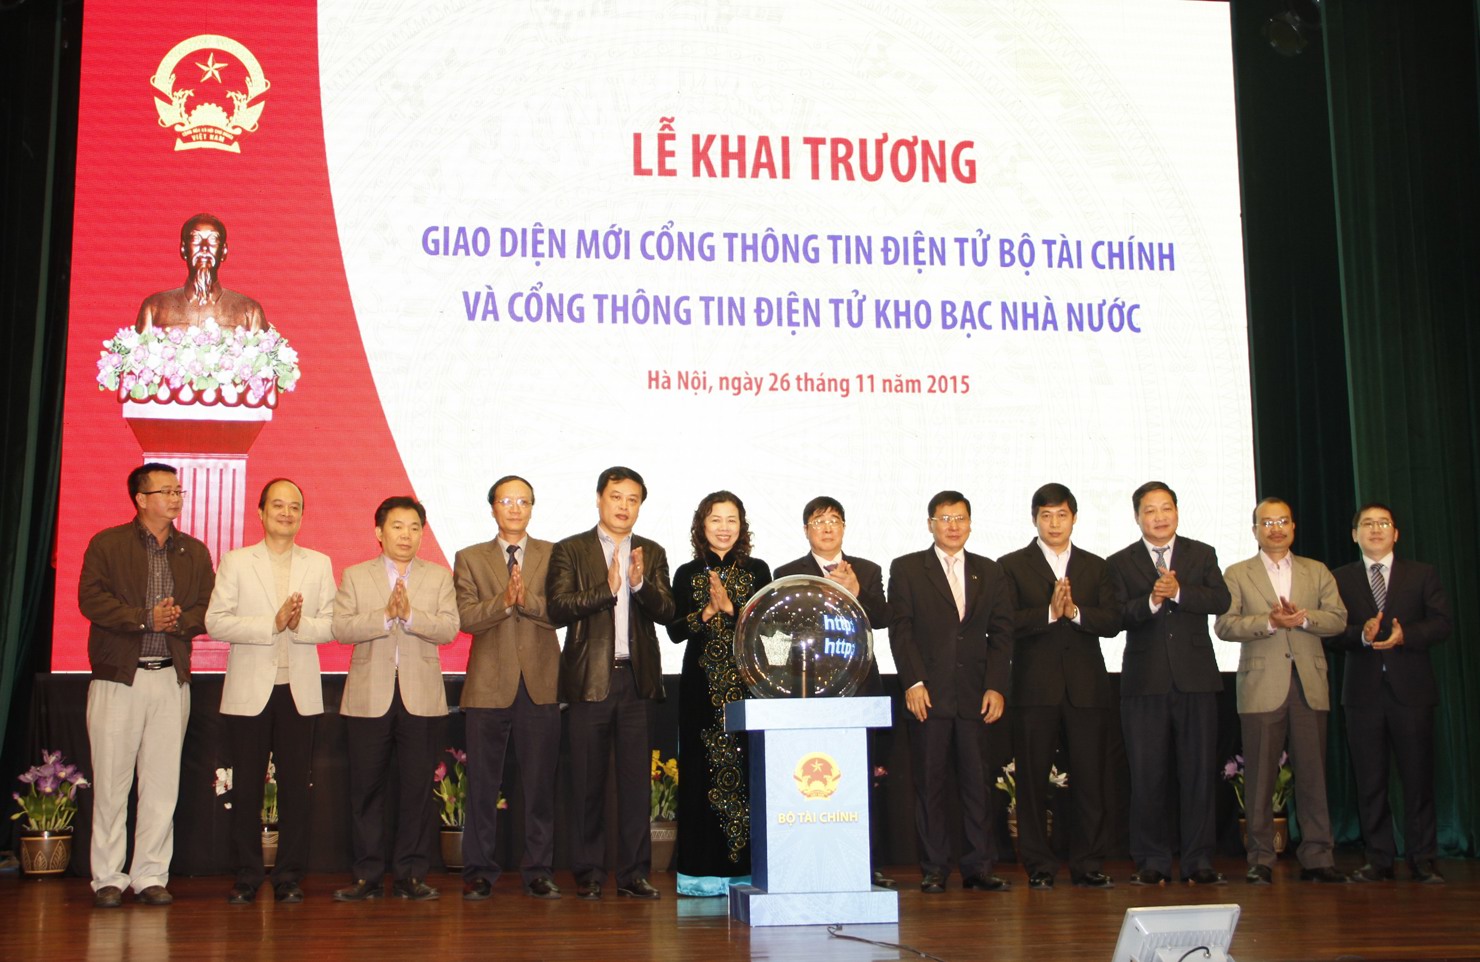 Thứ trưởng Bộ Tài chính Vũ Thị Mai, Tổng giám đốc KBNN Nguyễn Hồng Hà cùng các đại biểu tại Lễ khai trương Cổng Thông tin điện tử Bộ Tài chính và Cổng Thông tin điện tử Kho bạc Nhà nước.